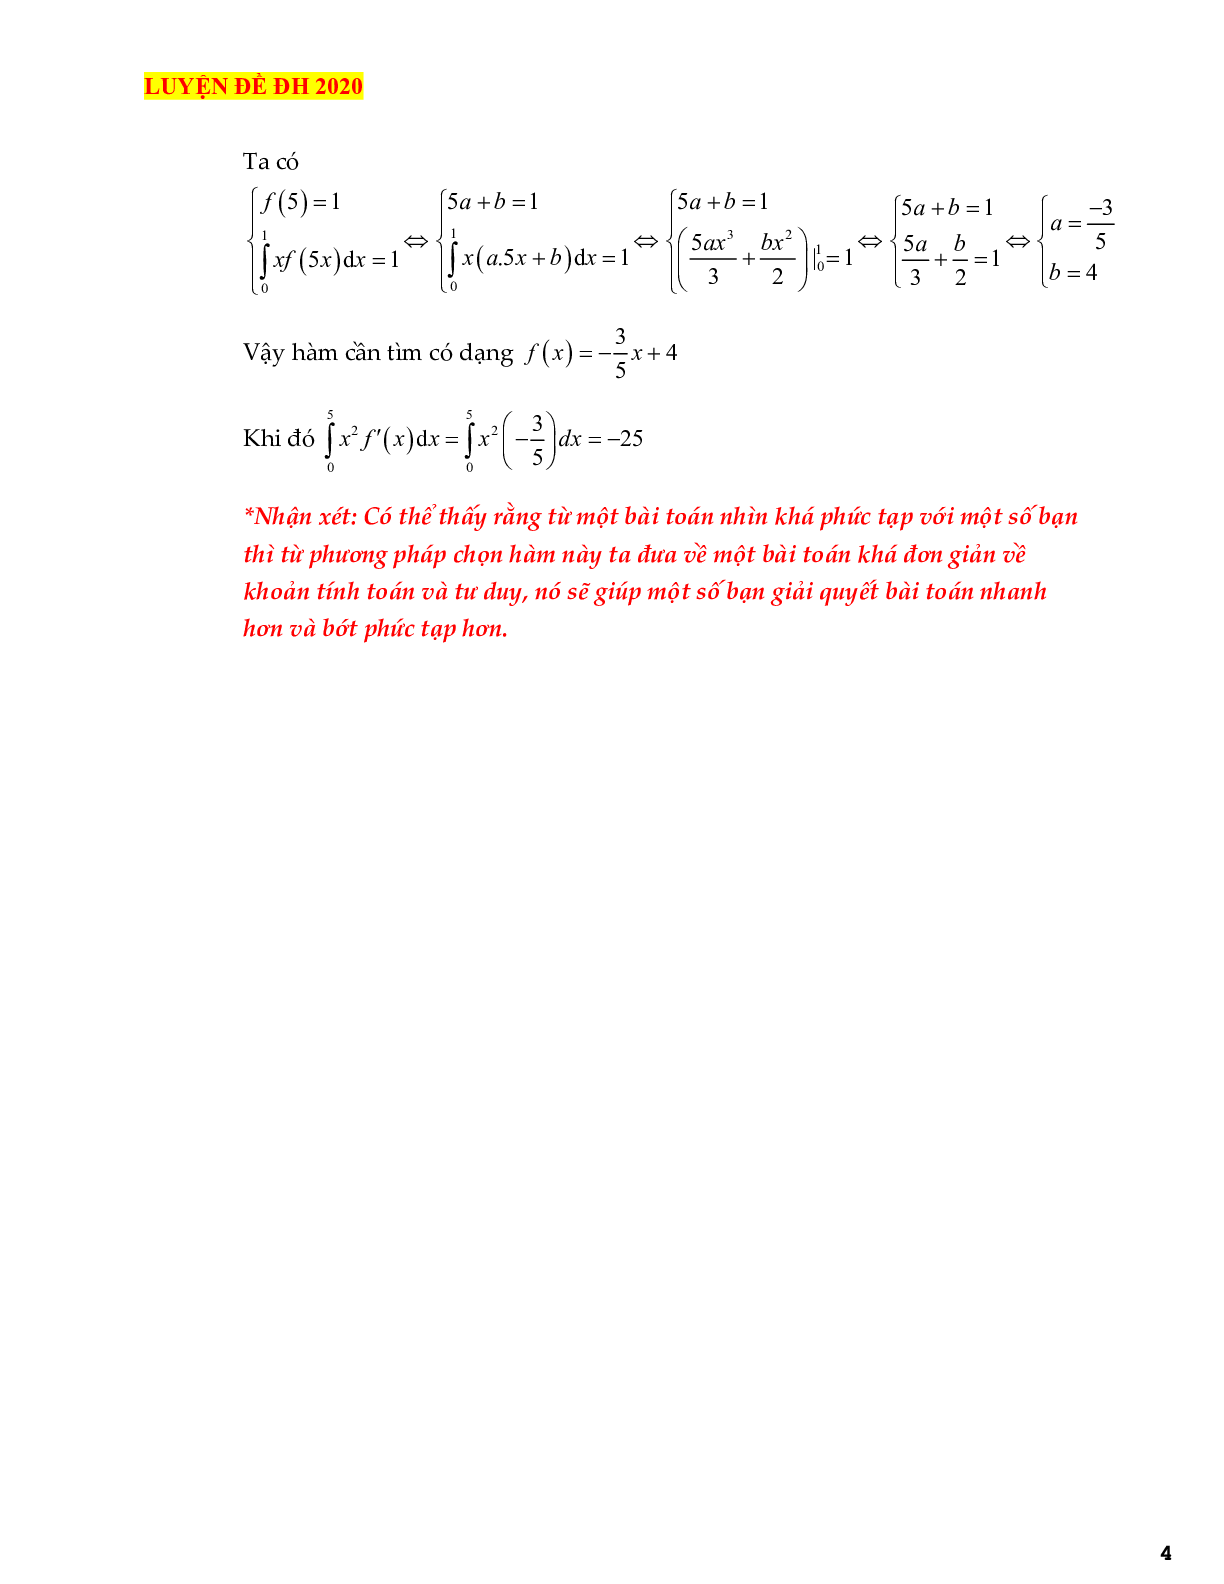 Kỹ thuật chọn hàm trong các bài toán tích phân tử cơ bản đến vận dụng cao (trang 4)